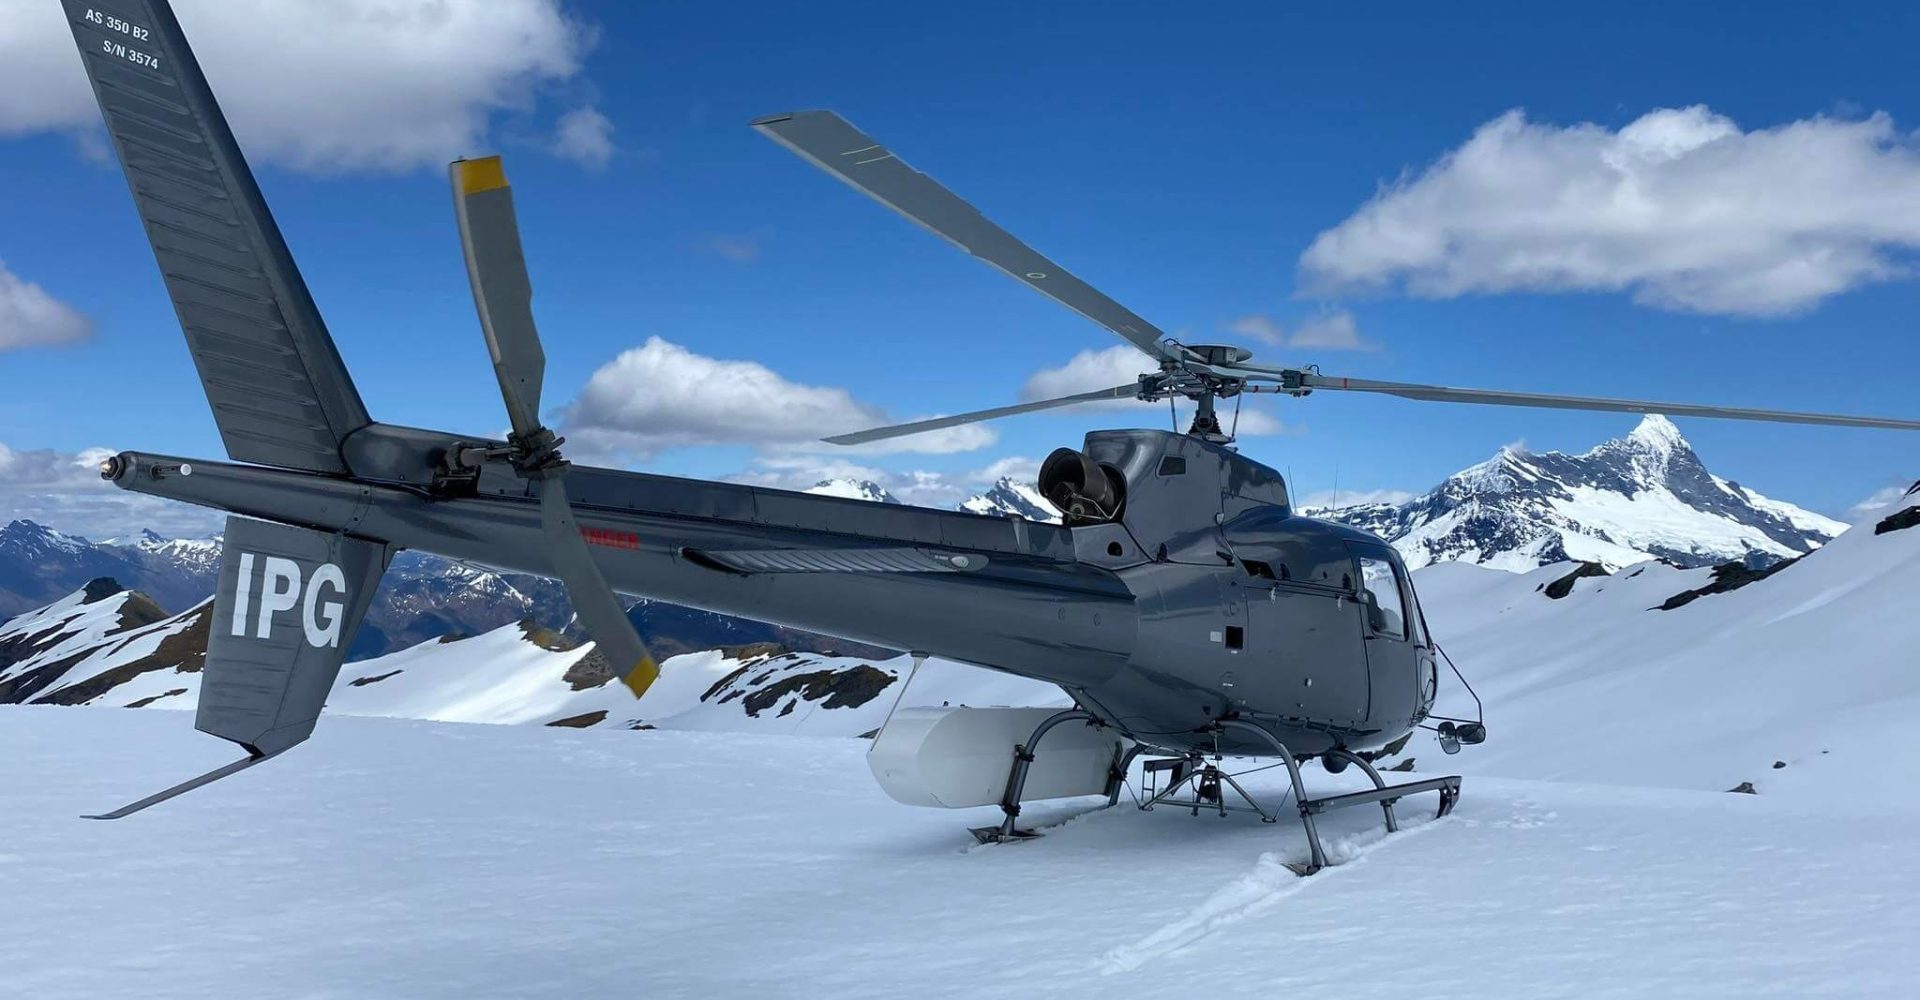 backcountry helicopters wanaka makarora luxury charters